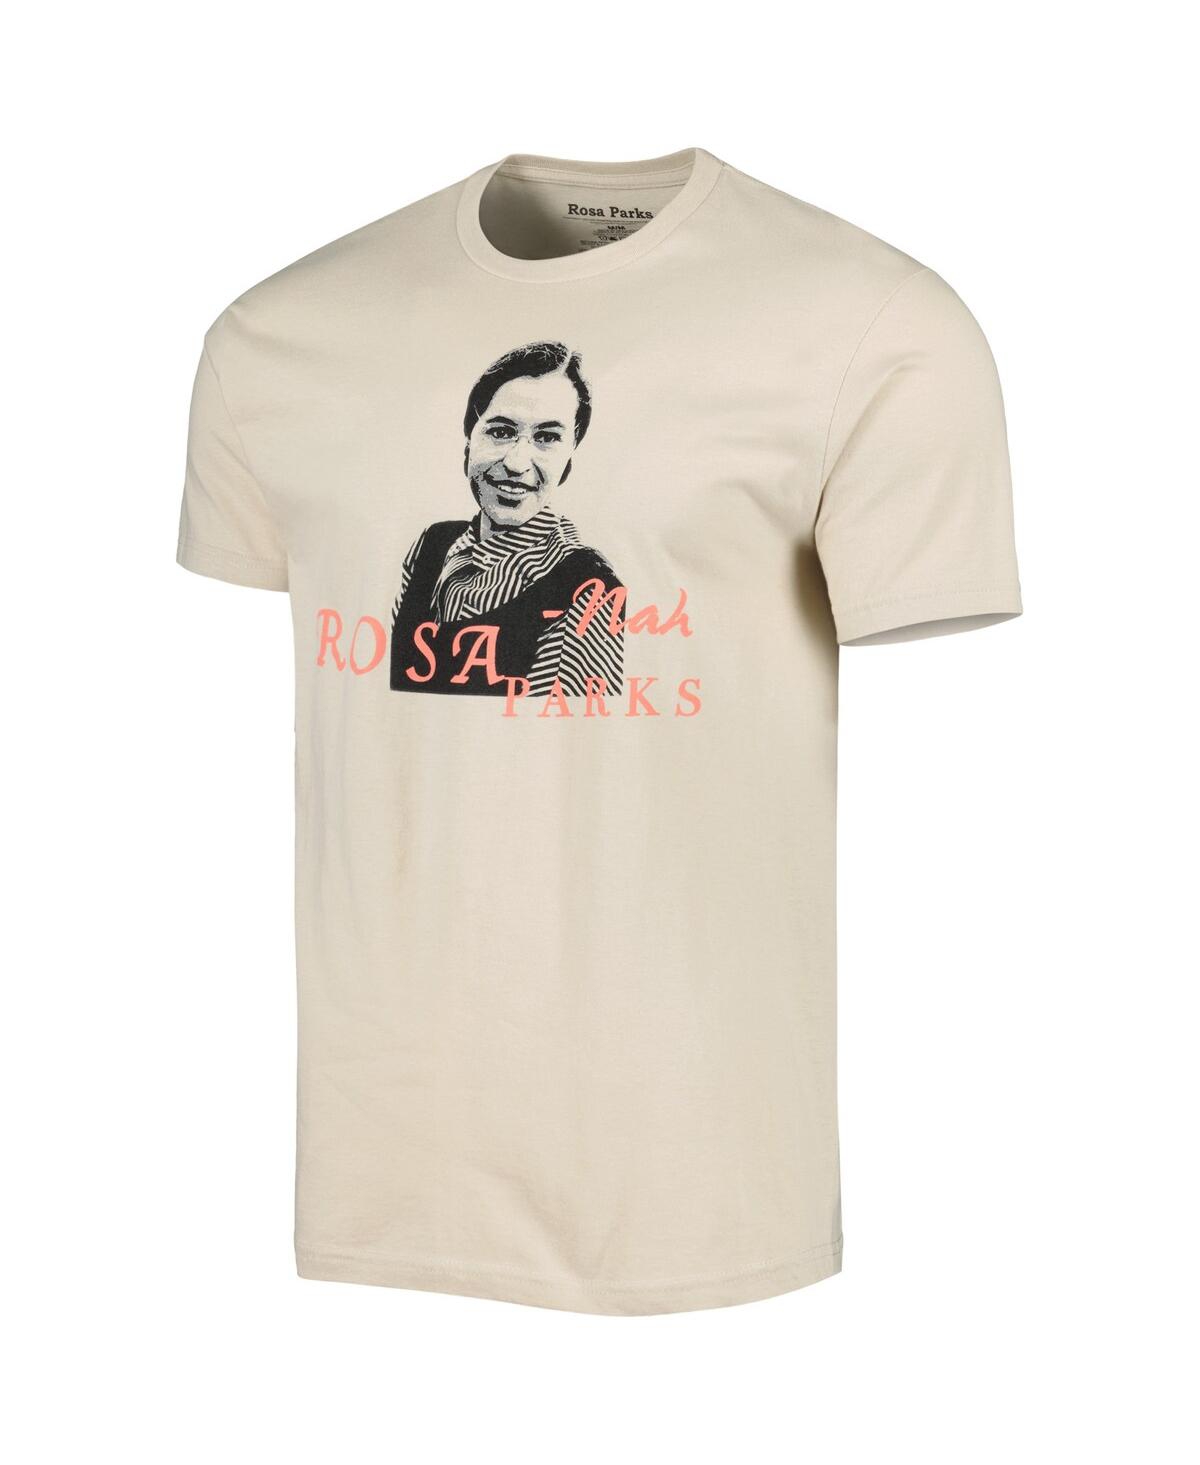 Shop Philcos Men's And Women's Natural Rosa Parks Graphic T-shirt